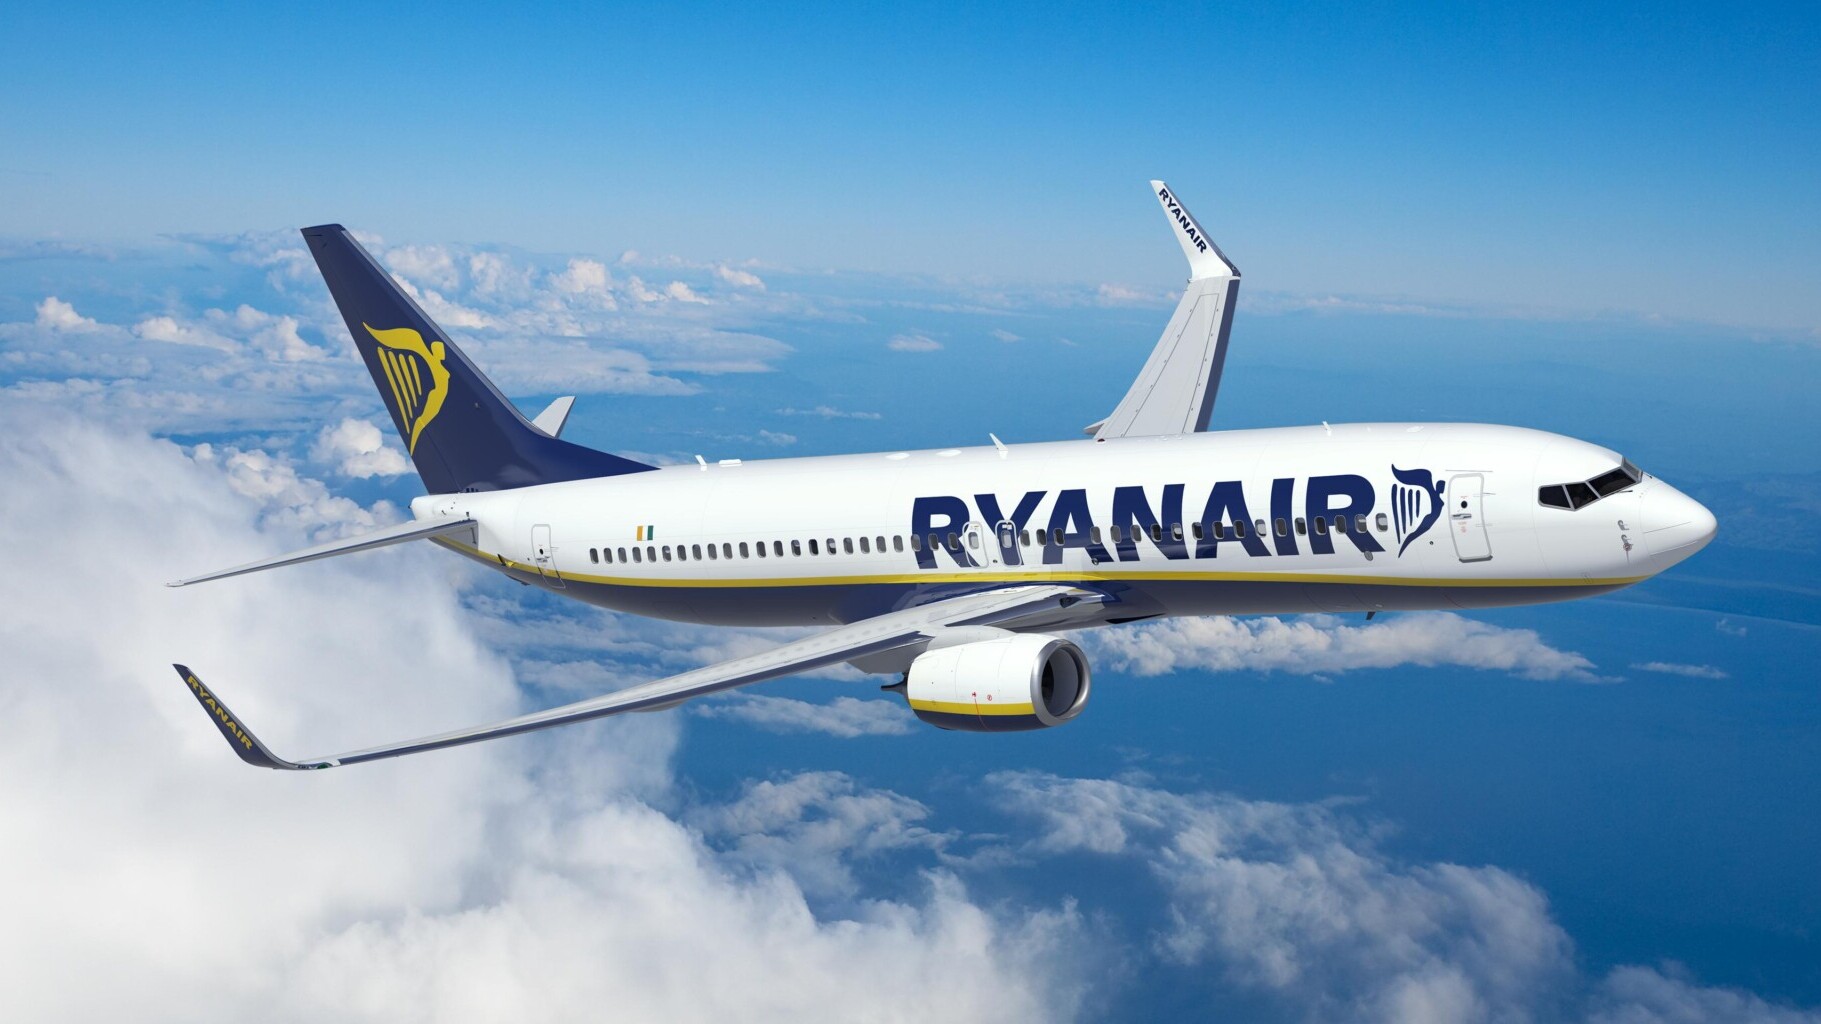 Voli low cost per Pasqua: Ryanair offerta voli scontati da 29,99